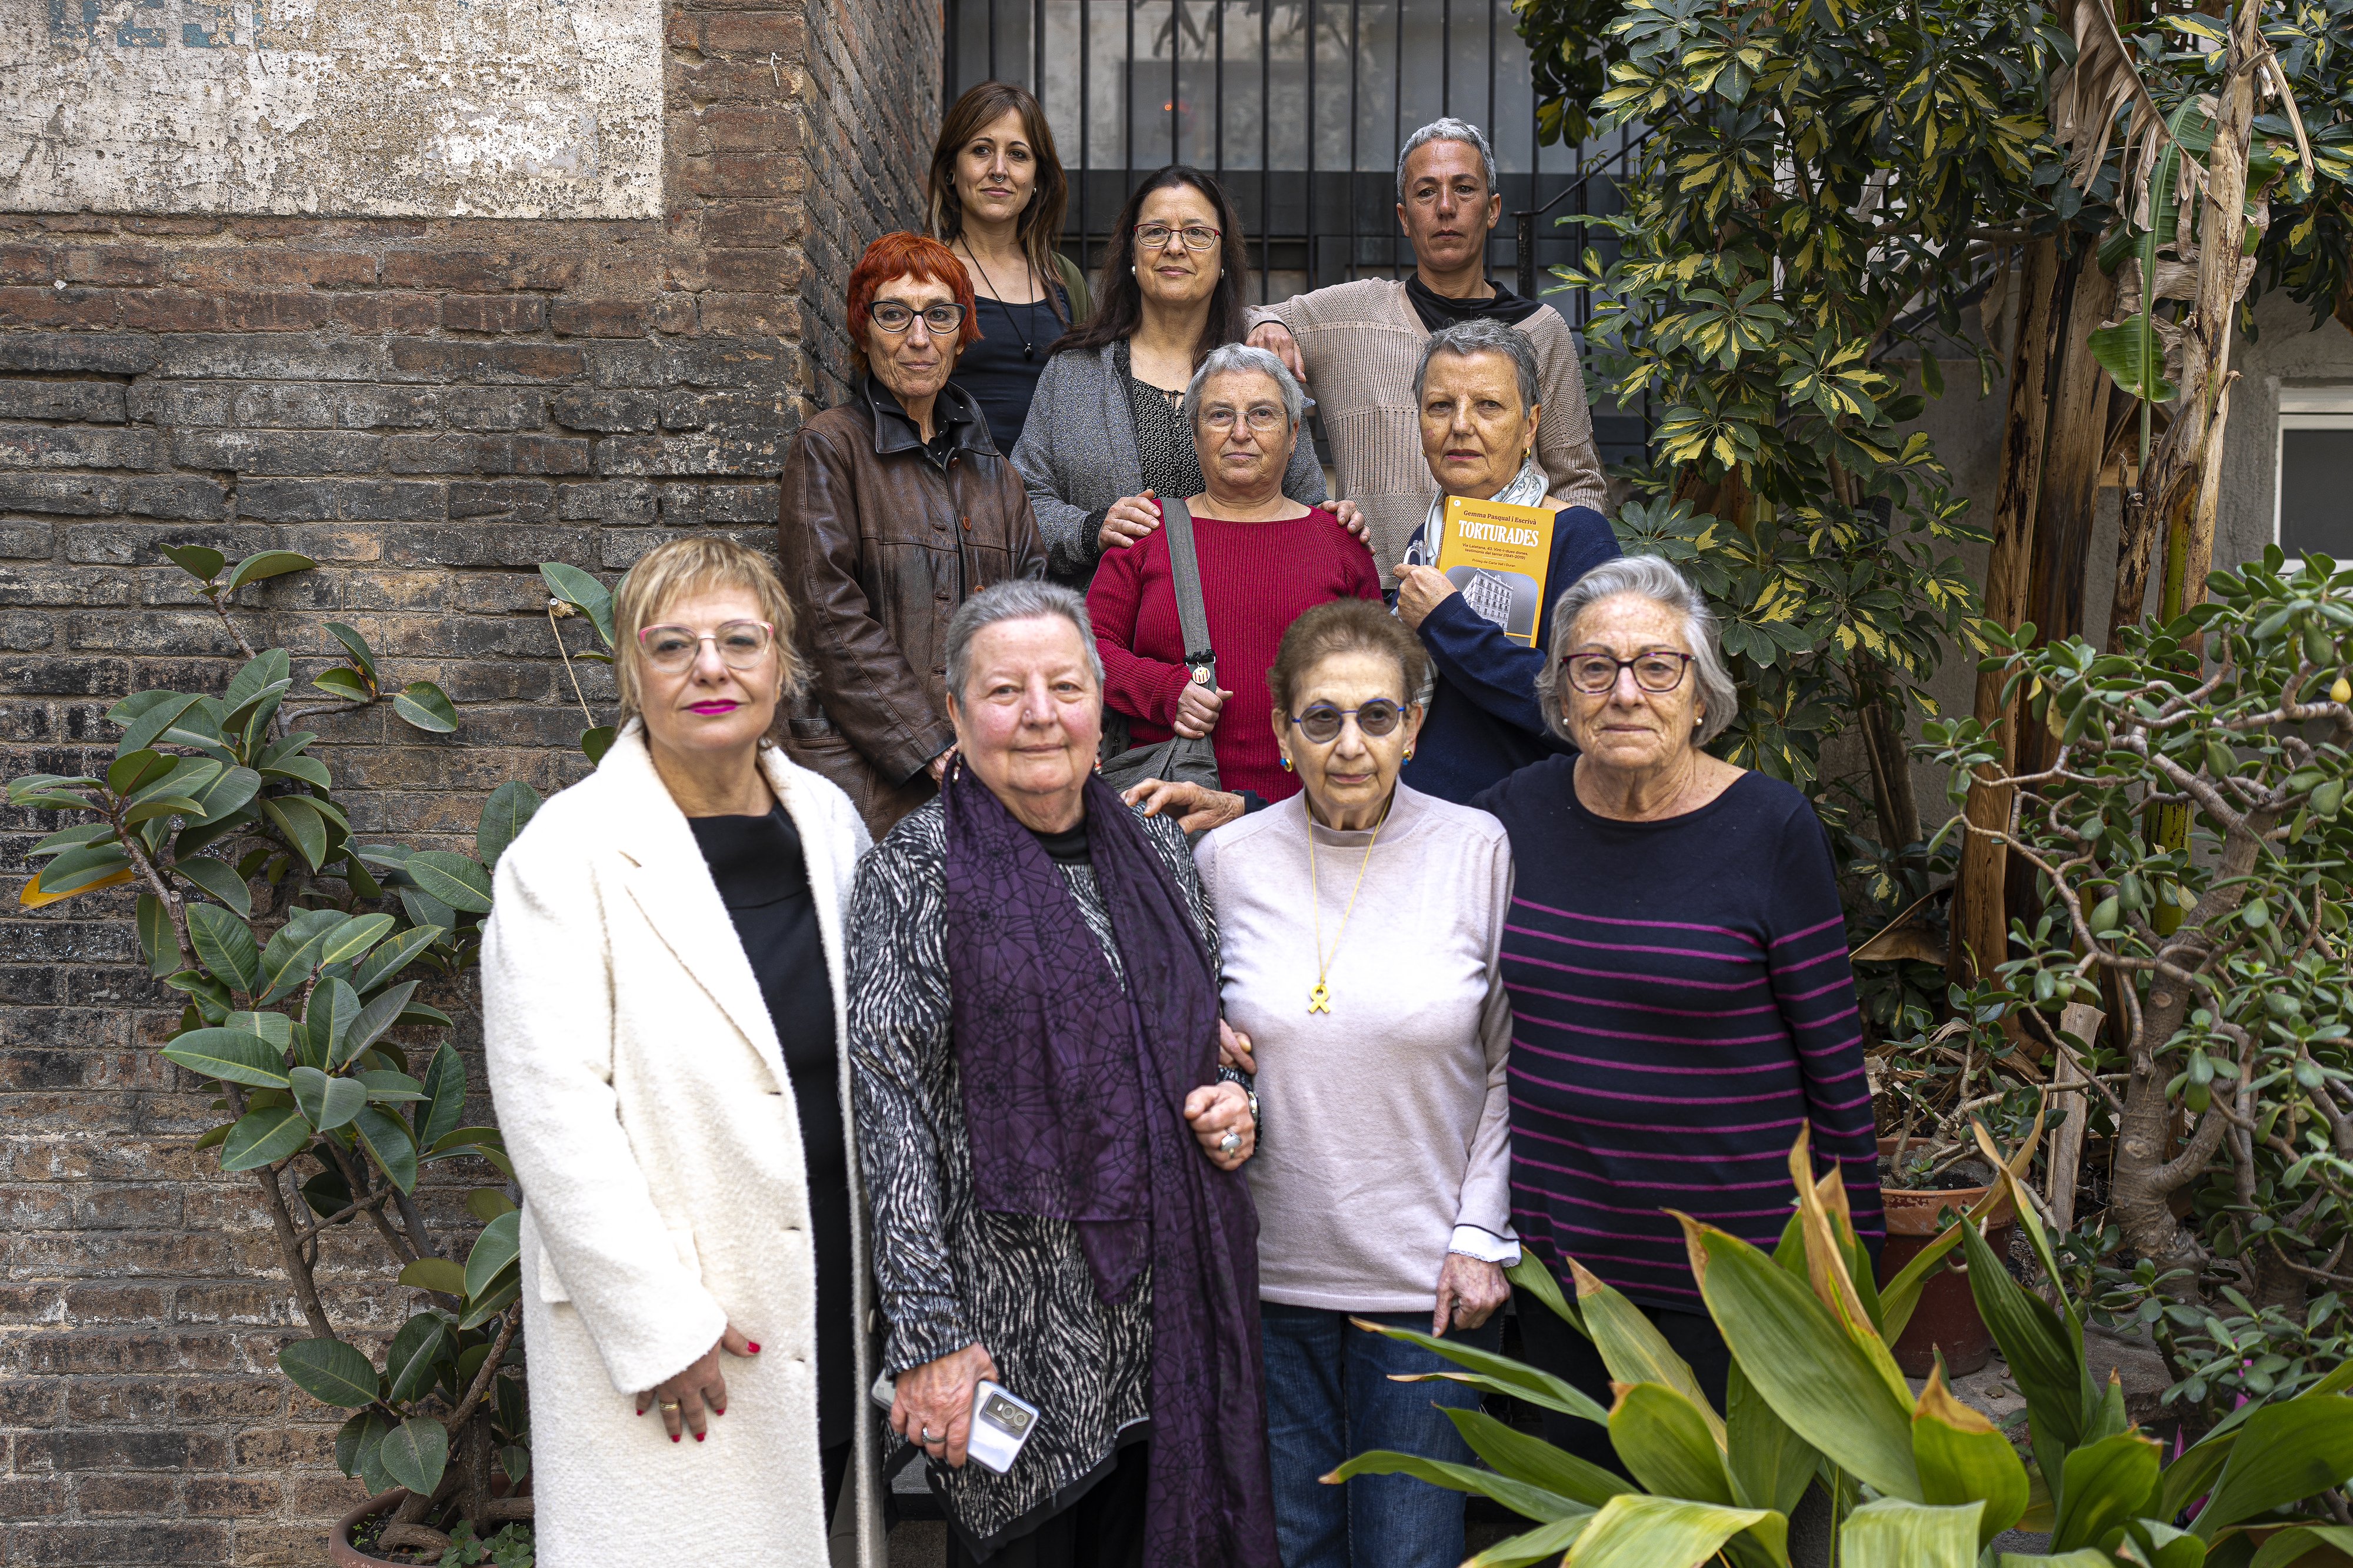 Torturades: la veu de 22 dones vexades a la comissaria de Via Laietana en el franquisme i en democràcia